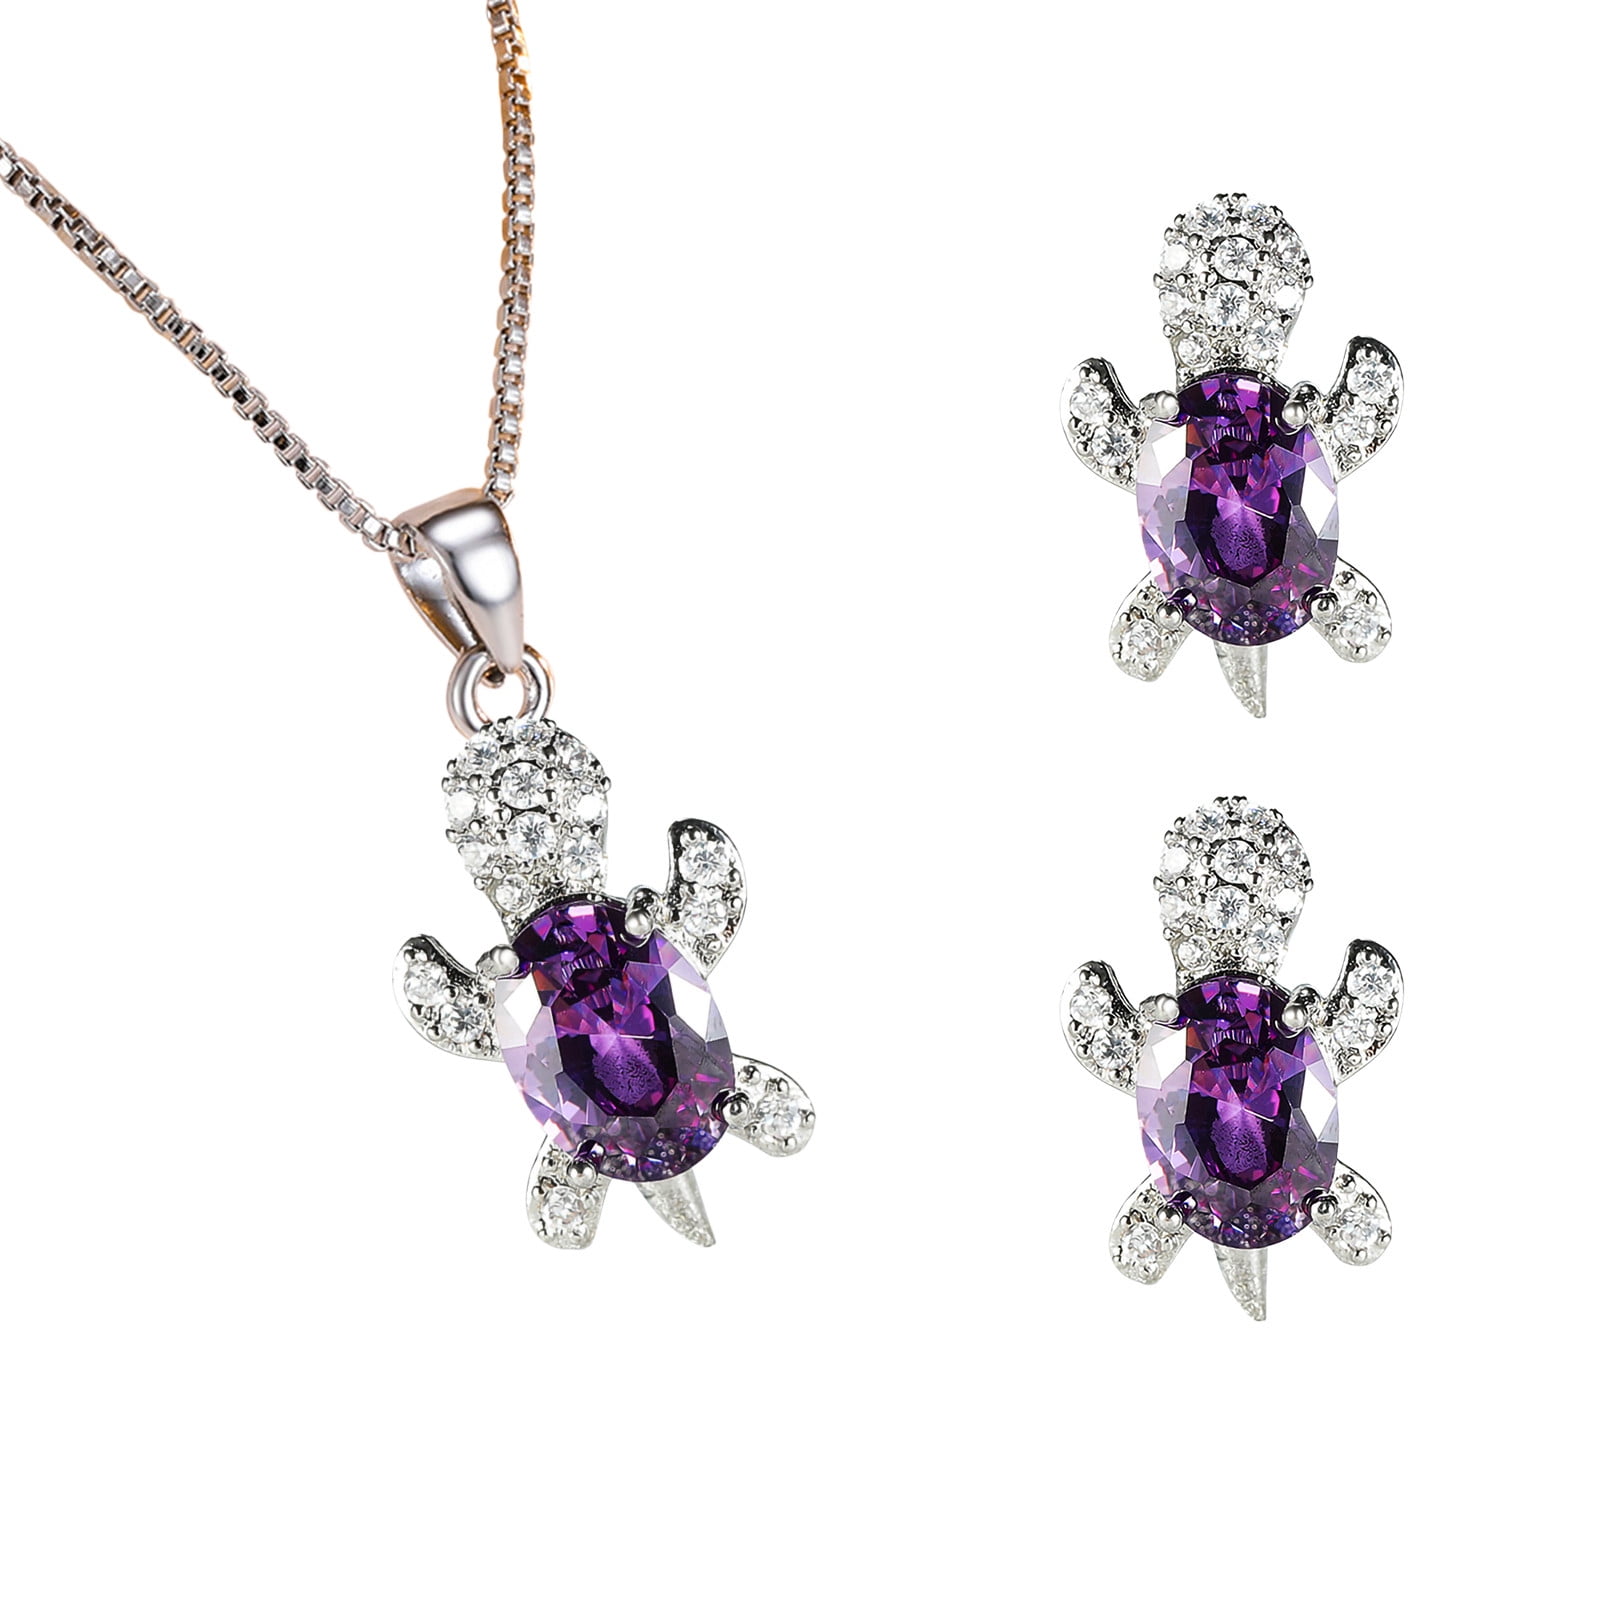 Details about   Bohemian 925 Sterling Silver Gemstone Necklace Earrings Bracelet Jewelry Set